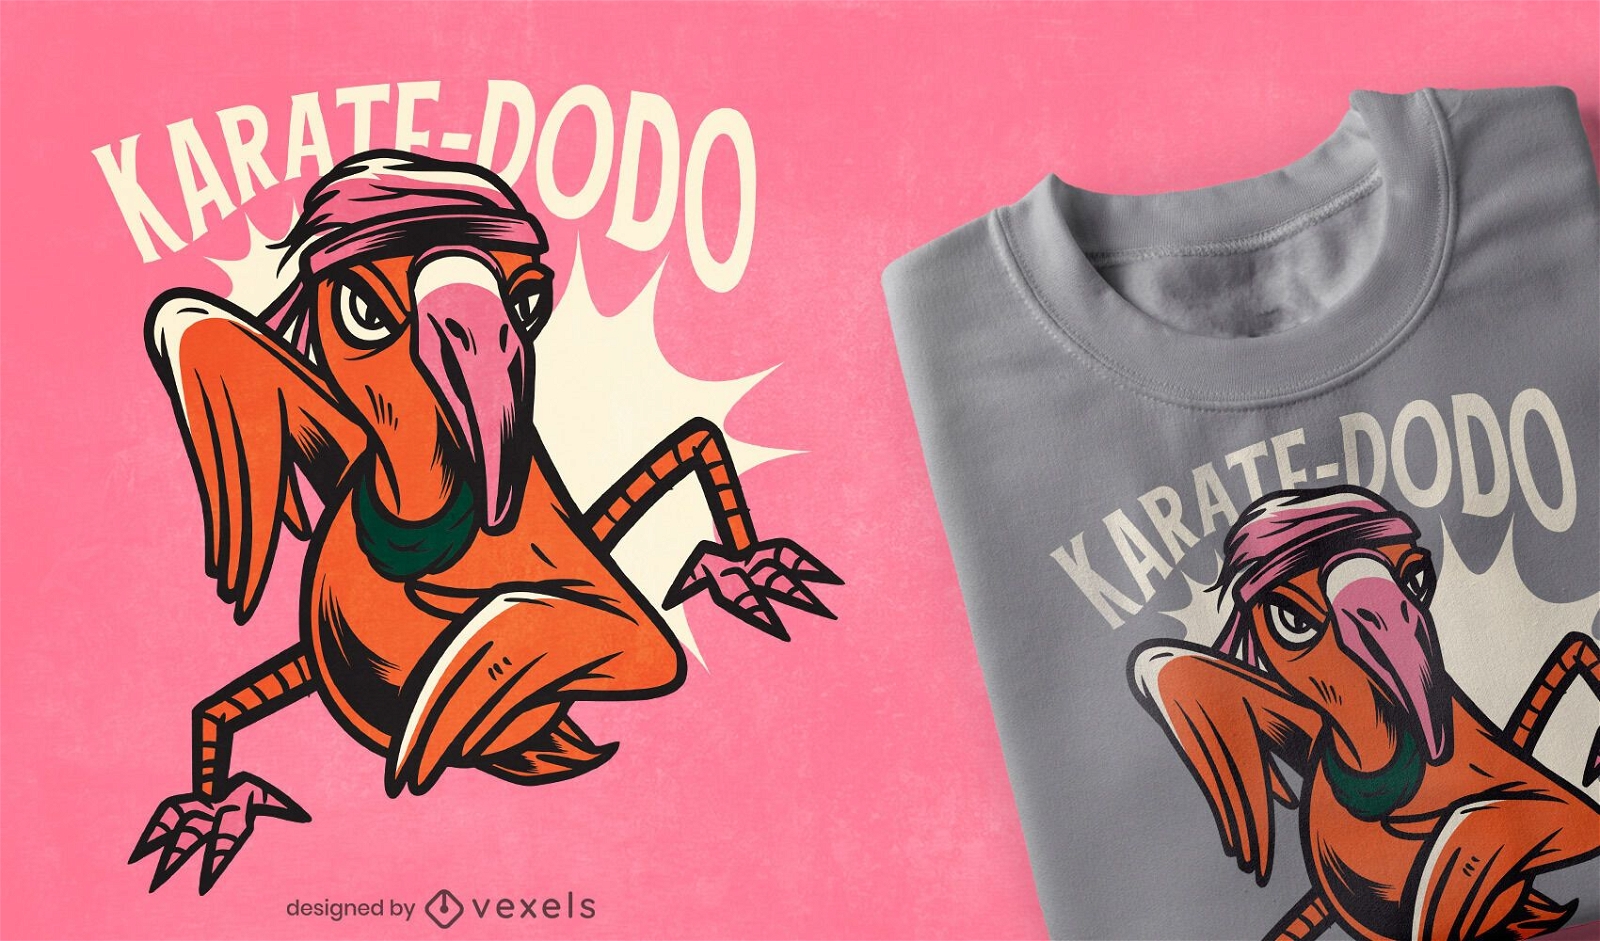 Dise?o de camiseta de karate dodo